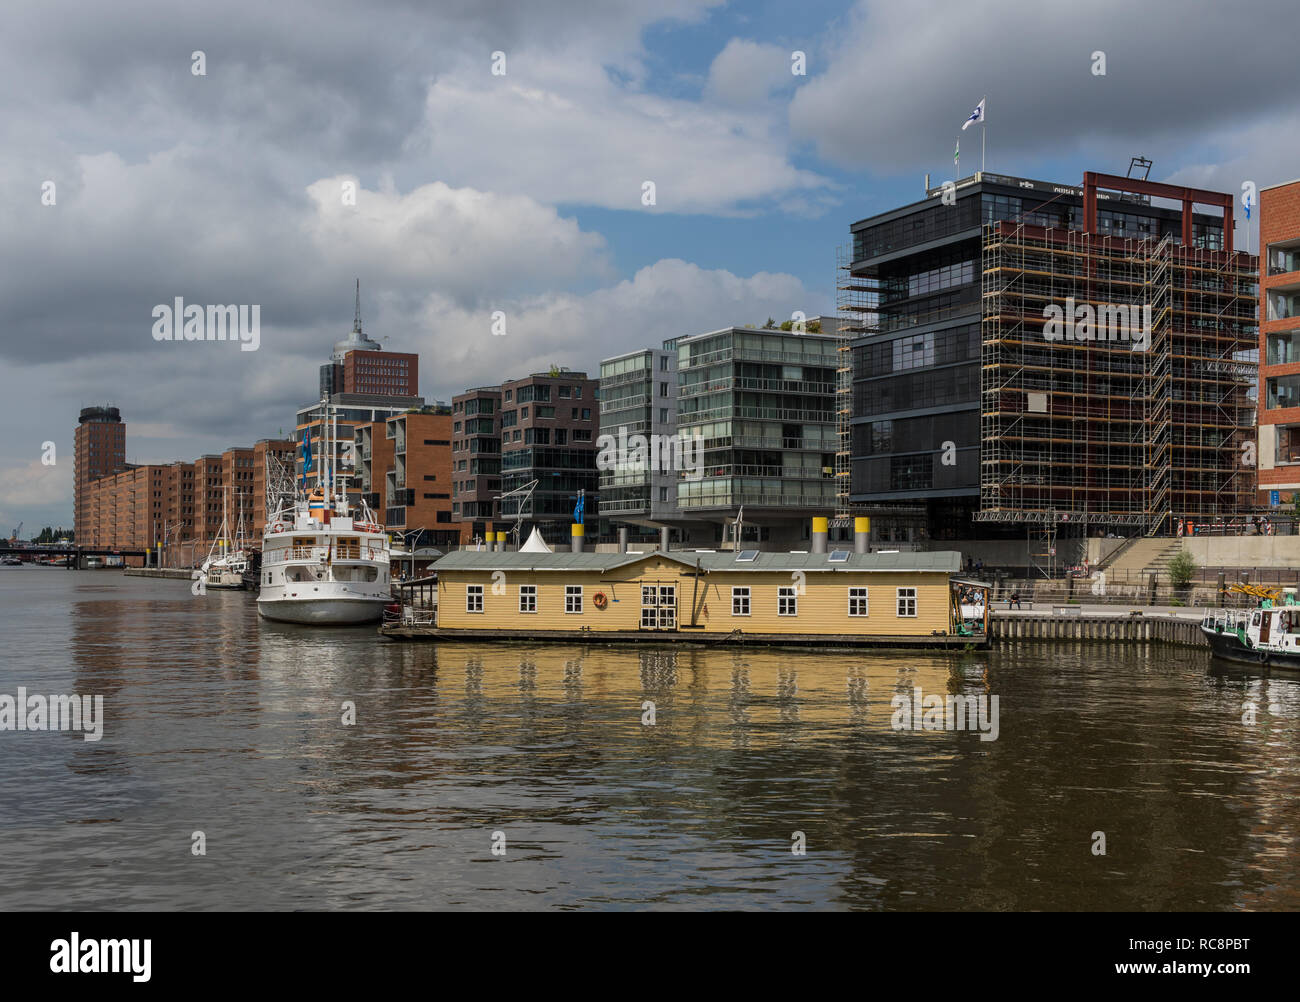 Hambourg, Allemagne - deuxième plus grande ville d'Allemagne, Hambourg a été classé site du patrimoine mondial de l'Unesco en raison de son architecture particulière Banque D'Images